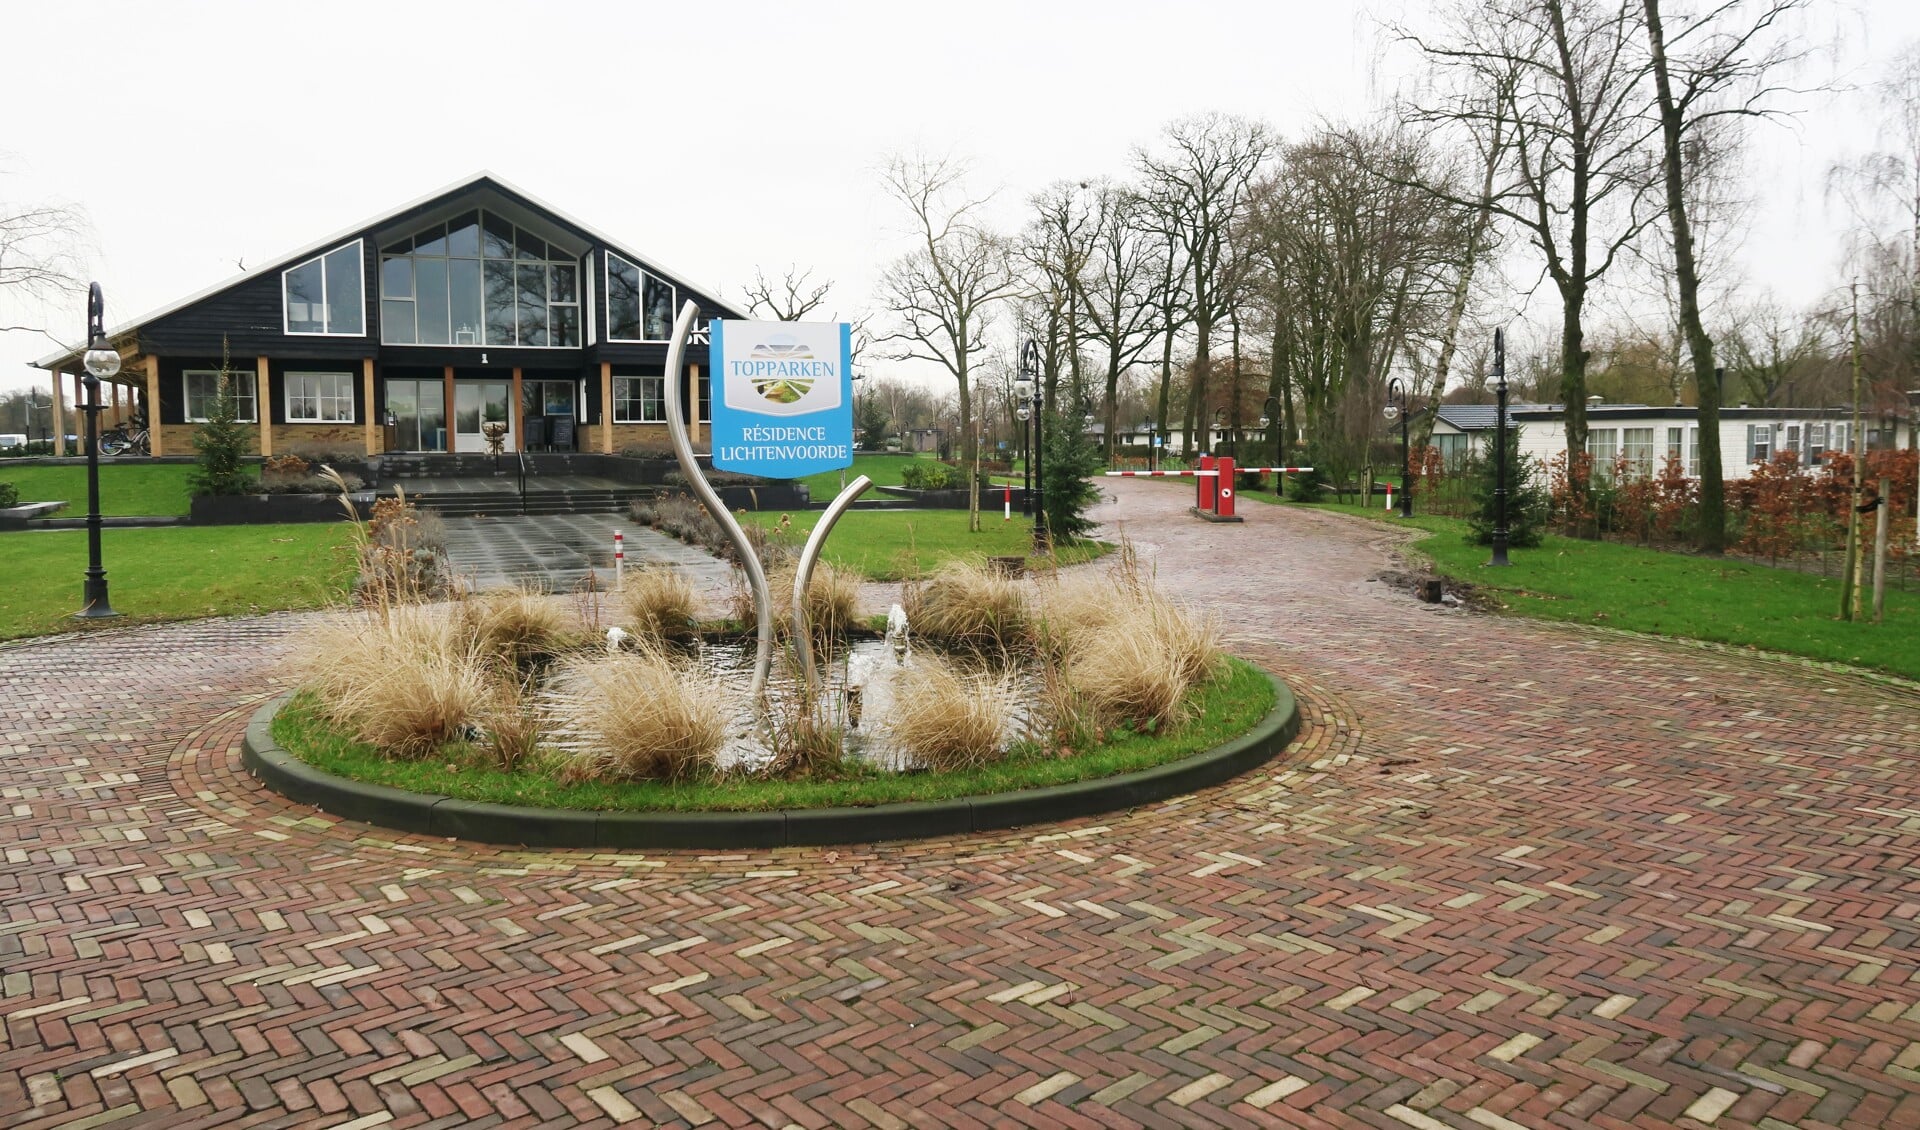 Vakantiepark Résidence aan de Boschlaan in Lichtenvoorde. Foto: Theo Huijskes